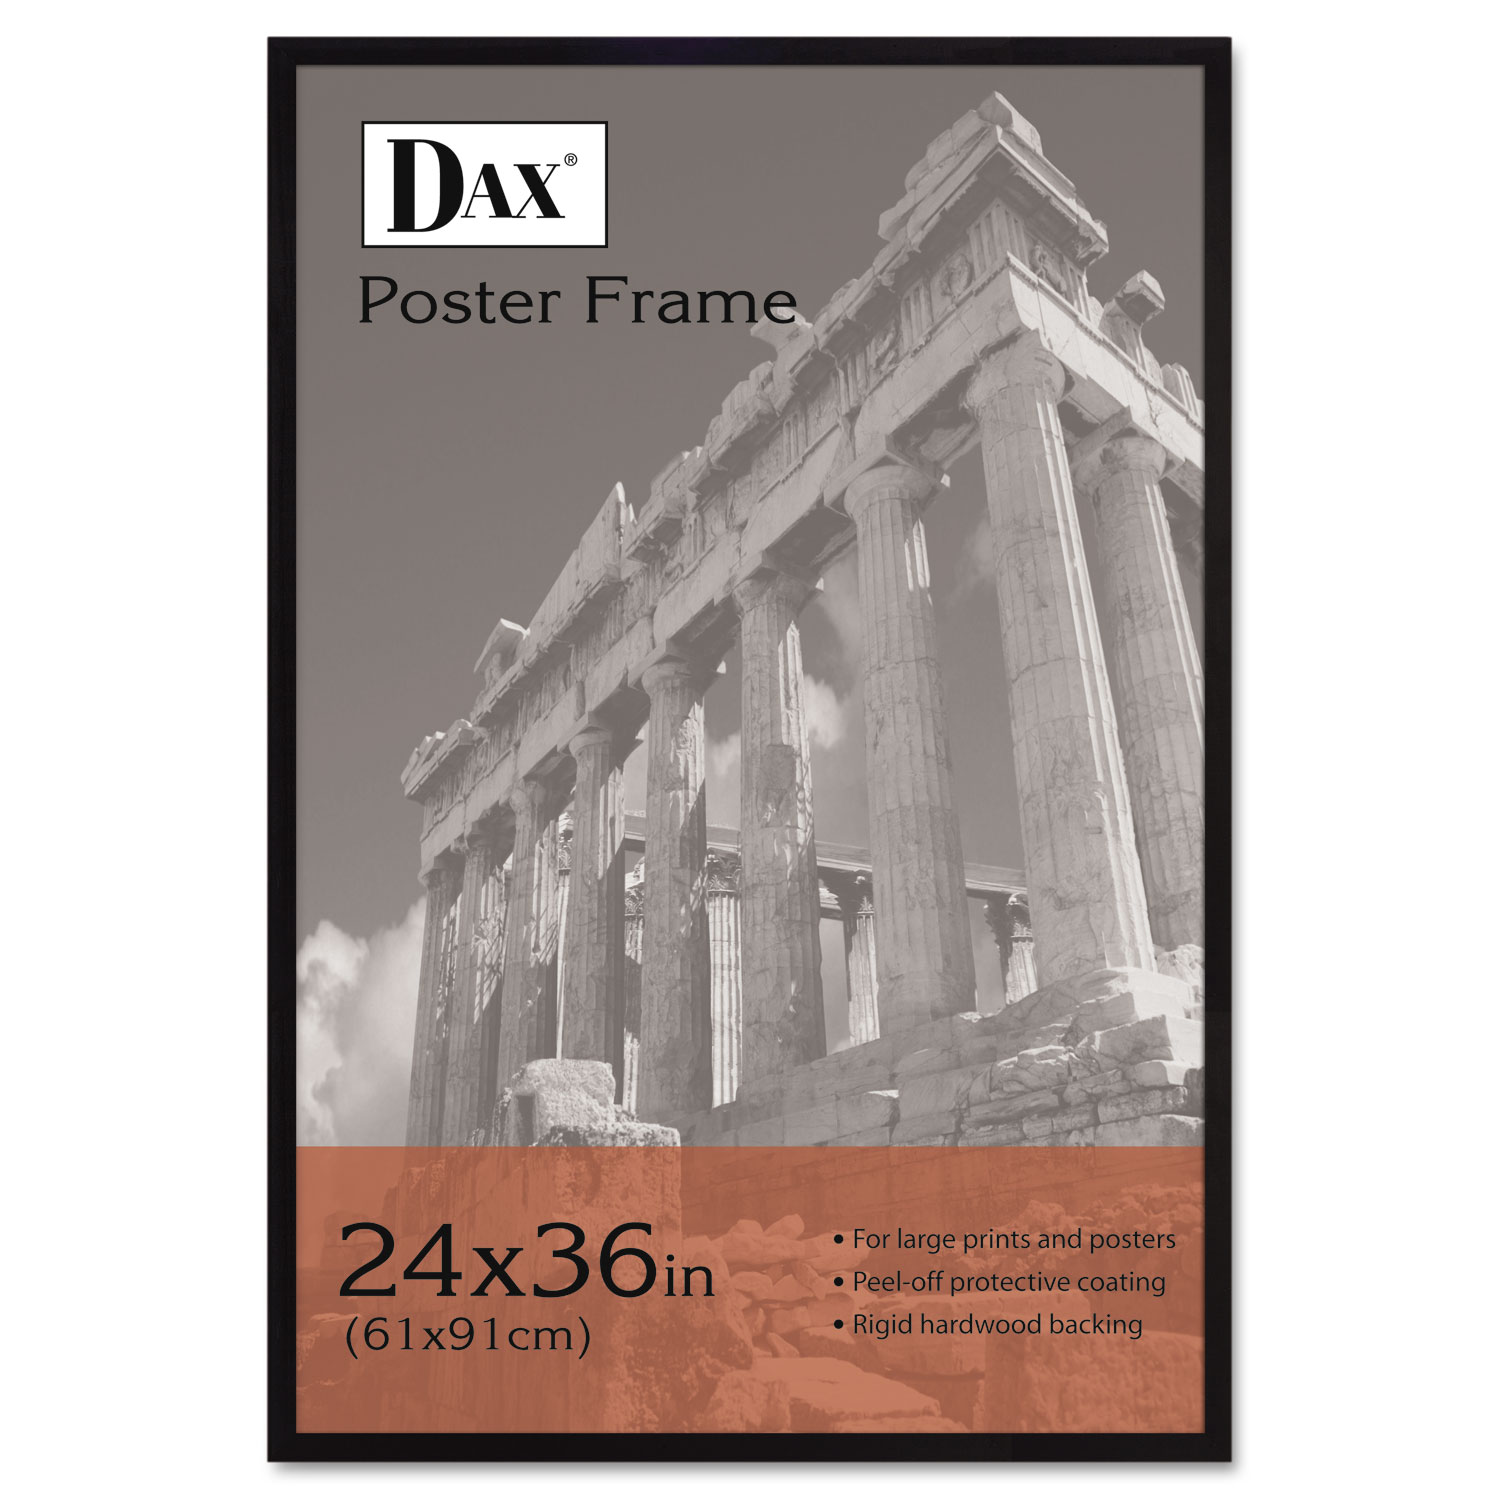  DAX 286036X Flat Face Wood Poster Frame, Clear Plastic Window, 24 x 36, Black Border (DAX286036X) 